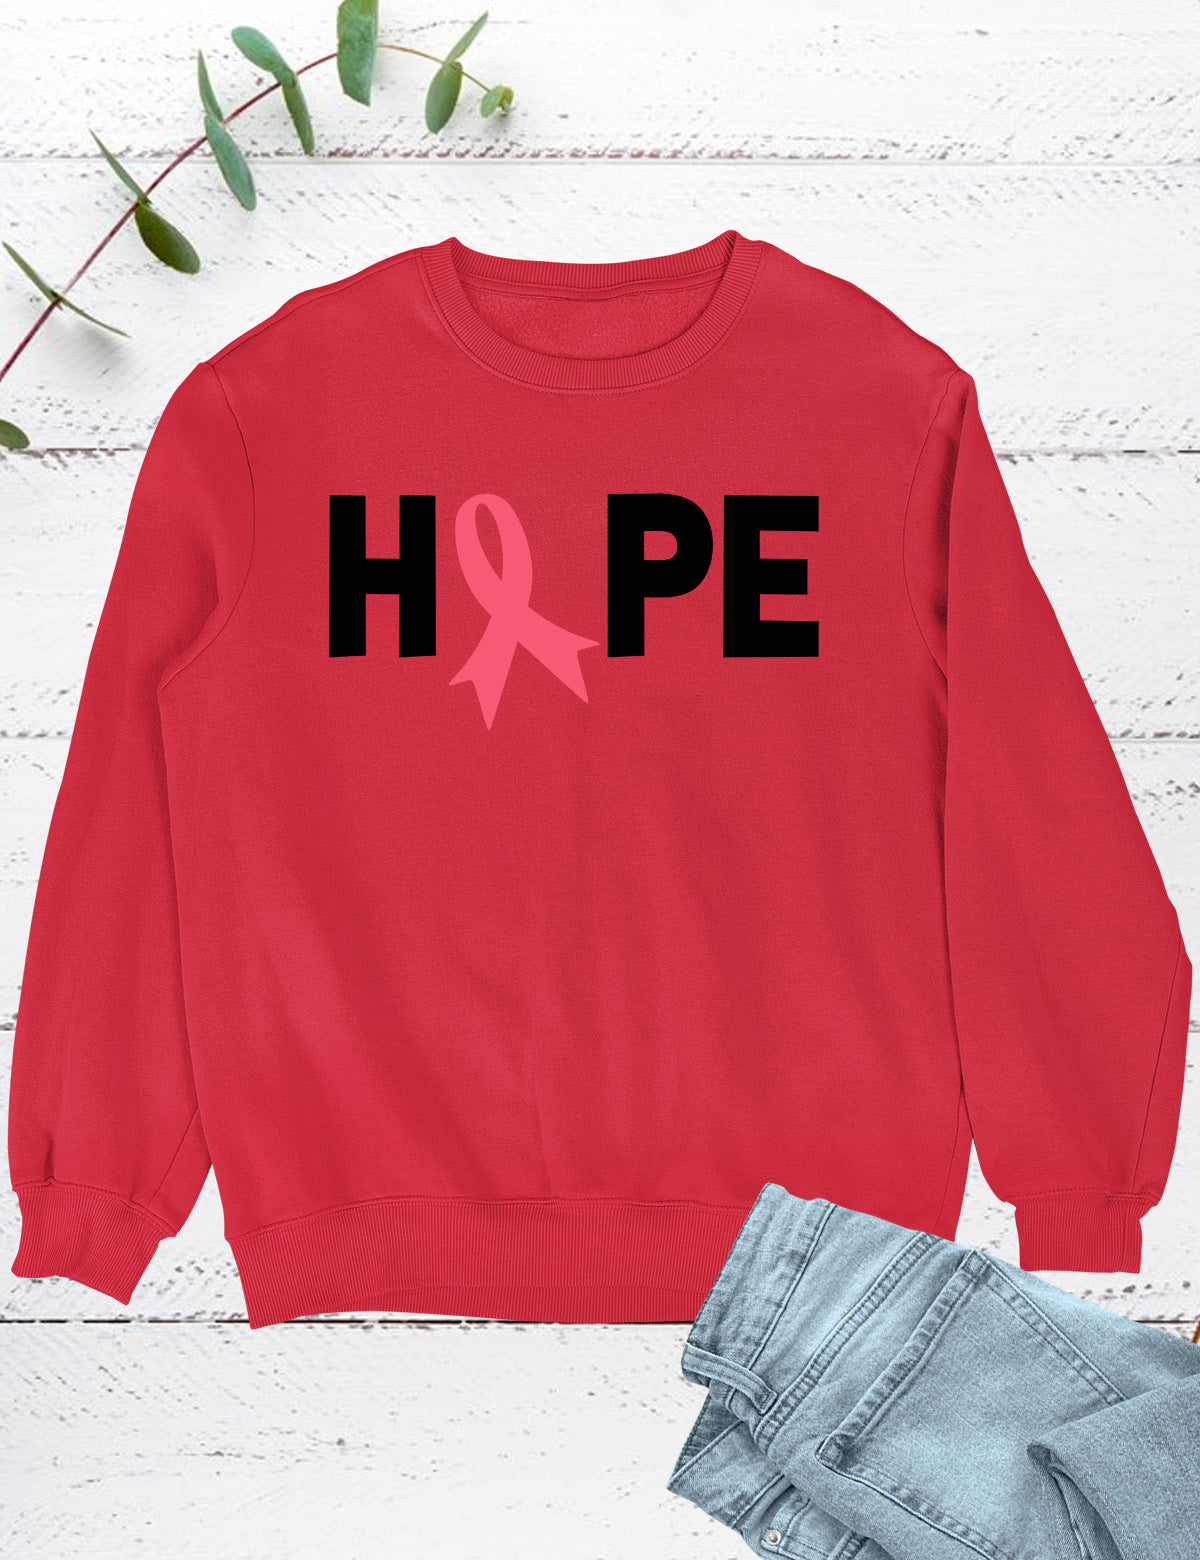 Hope Christian Women Awareness Sweatshirt